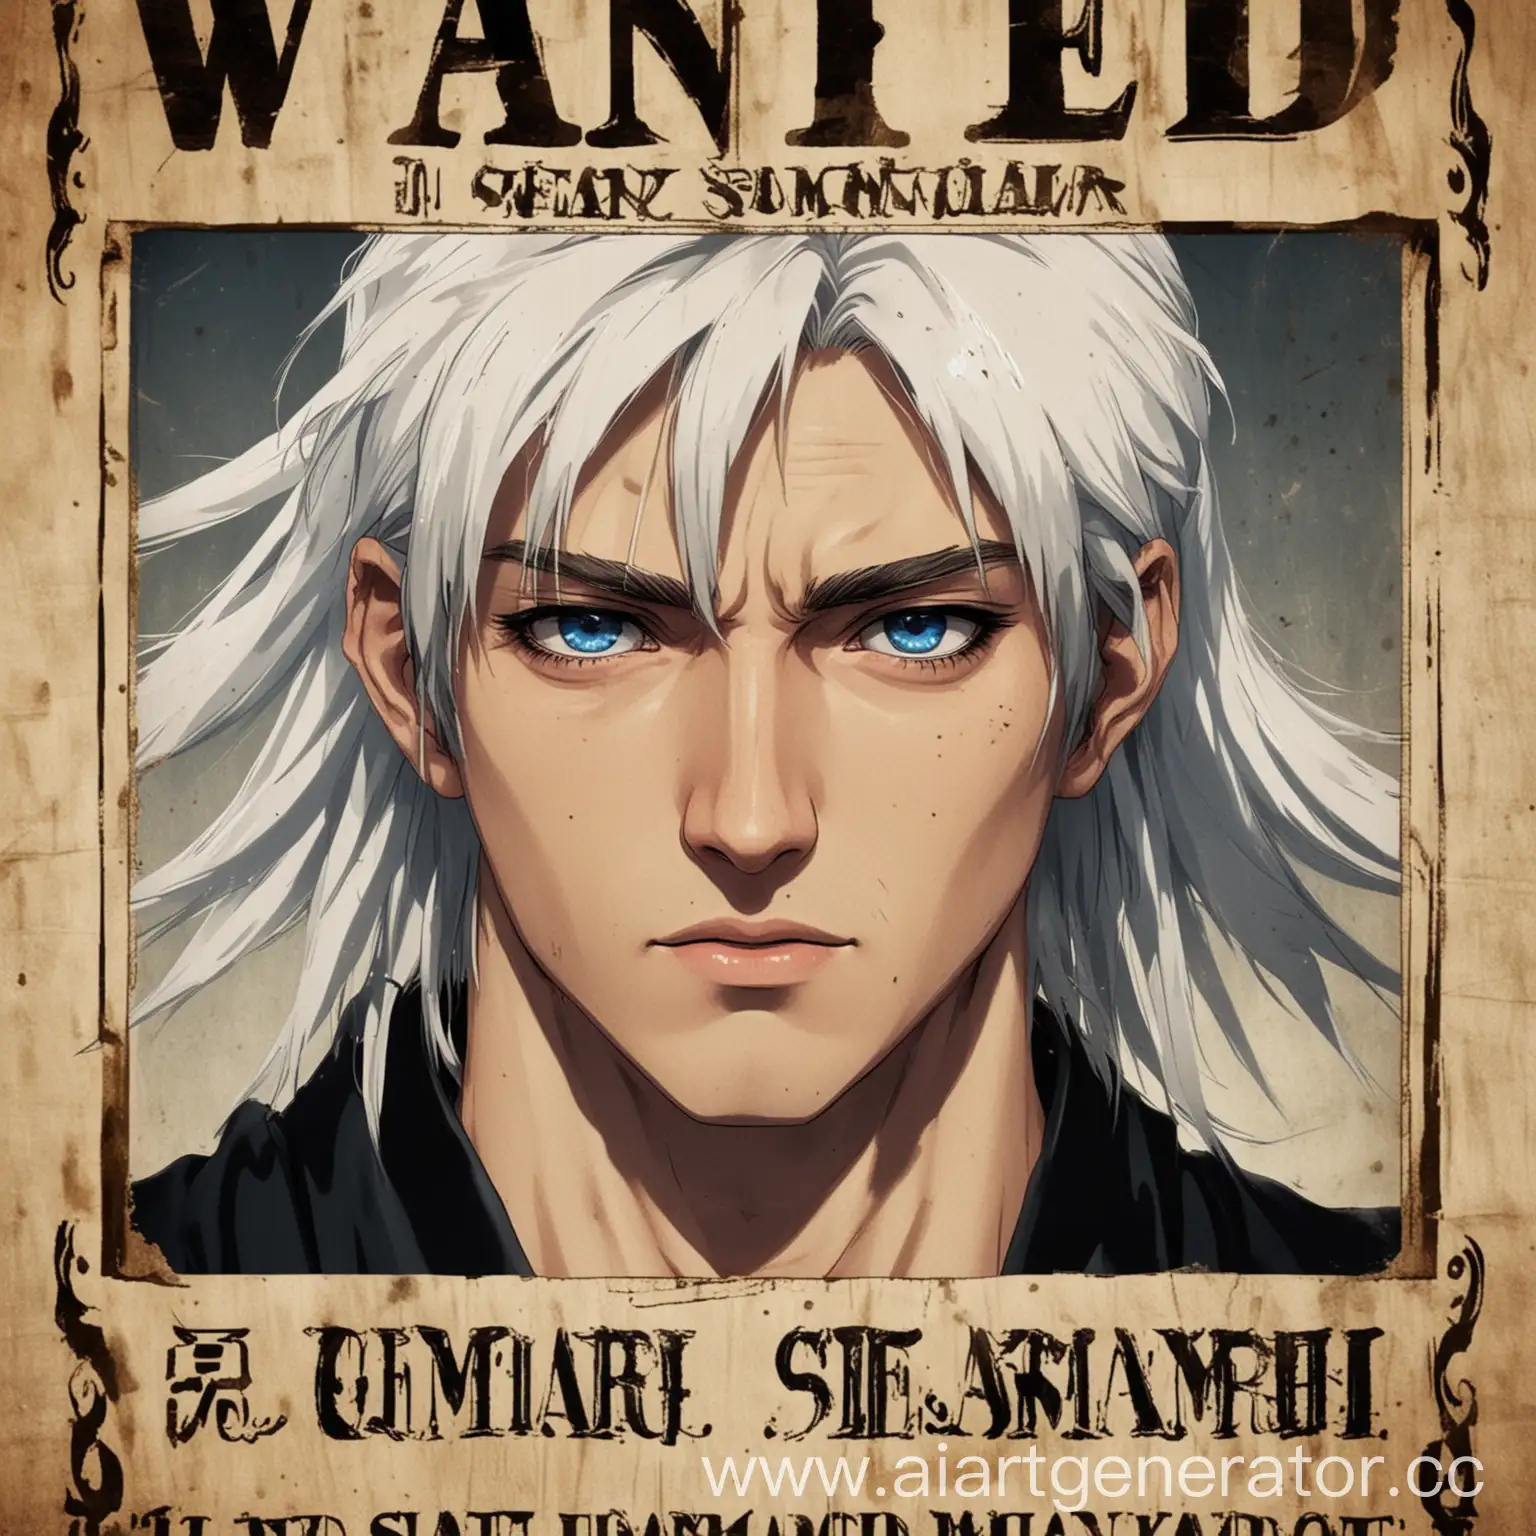 Постер разыскивается, парень 20 лет, белые волосы в самурайской чёрной шляпе, синие глаза, тень, награда в 200 миллионов, аниме стиль.

